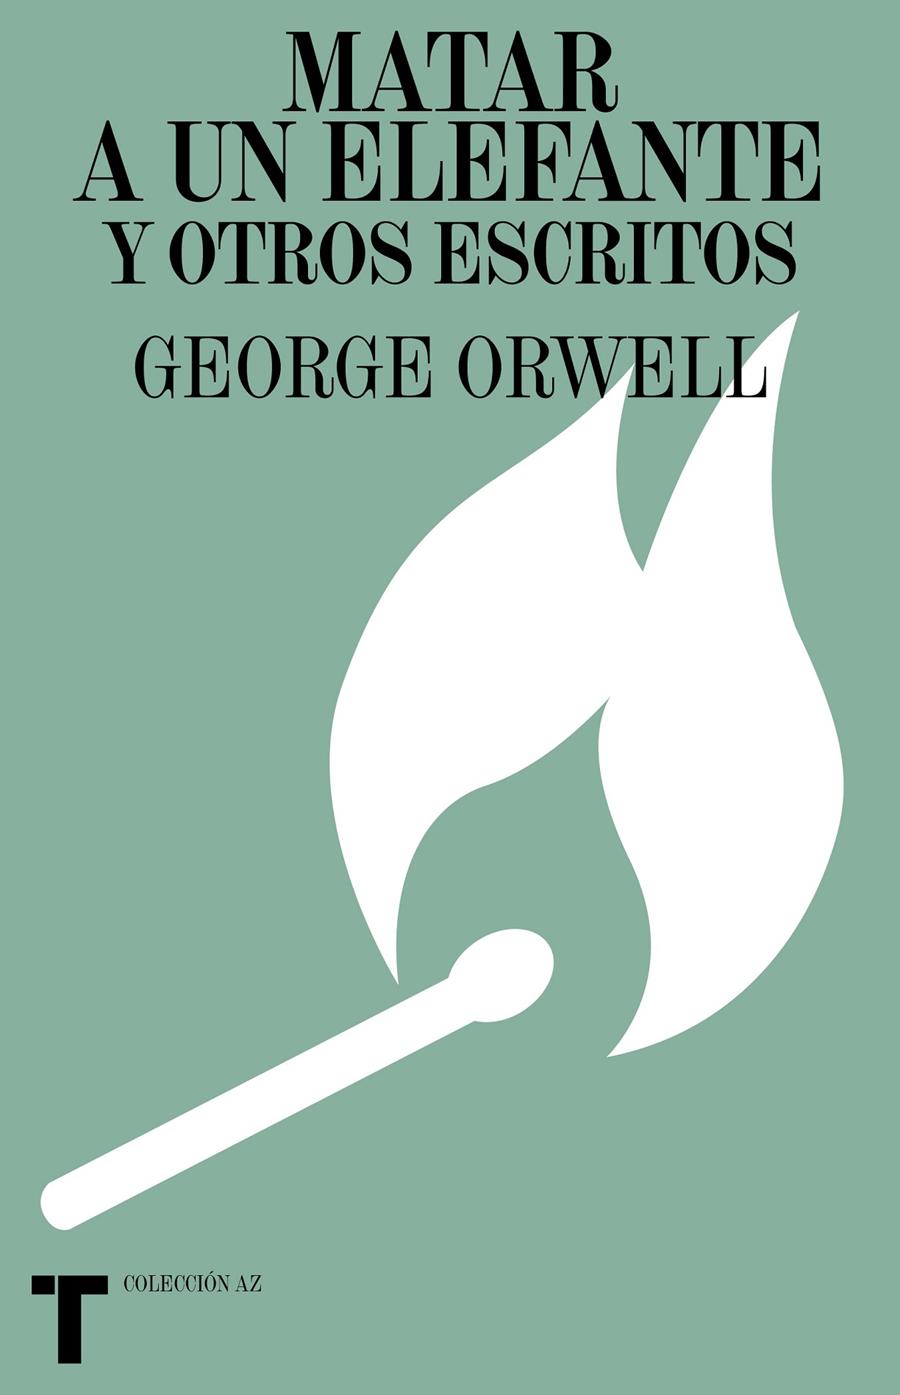 Matar a un elefante y otros escritos | Orwell, George | Cooperativa autogestionària